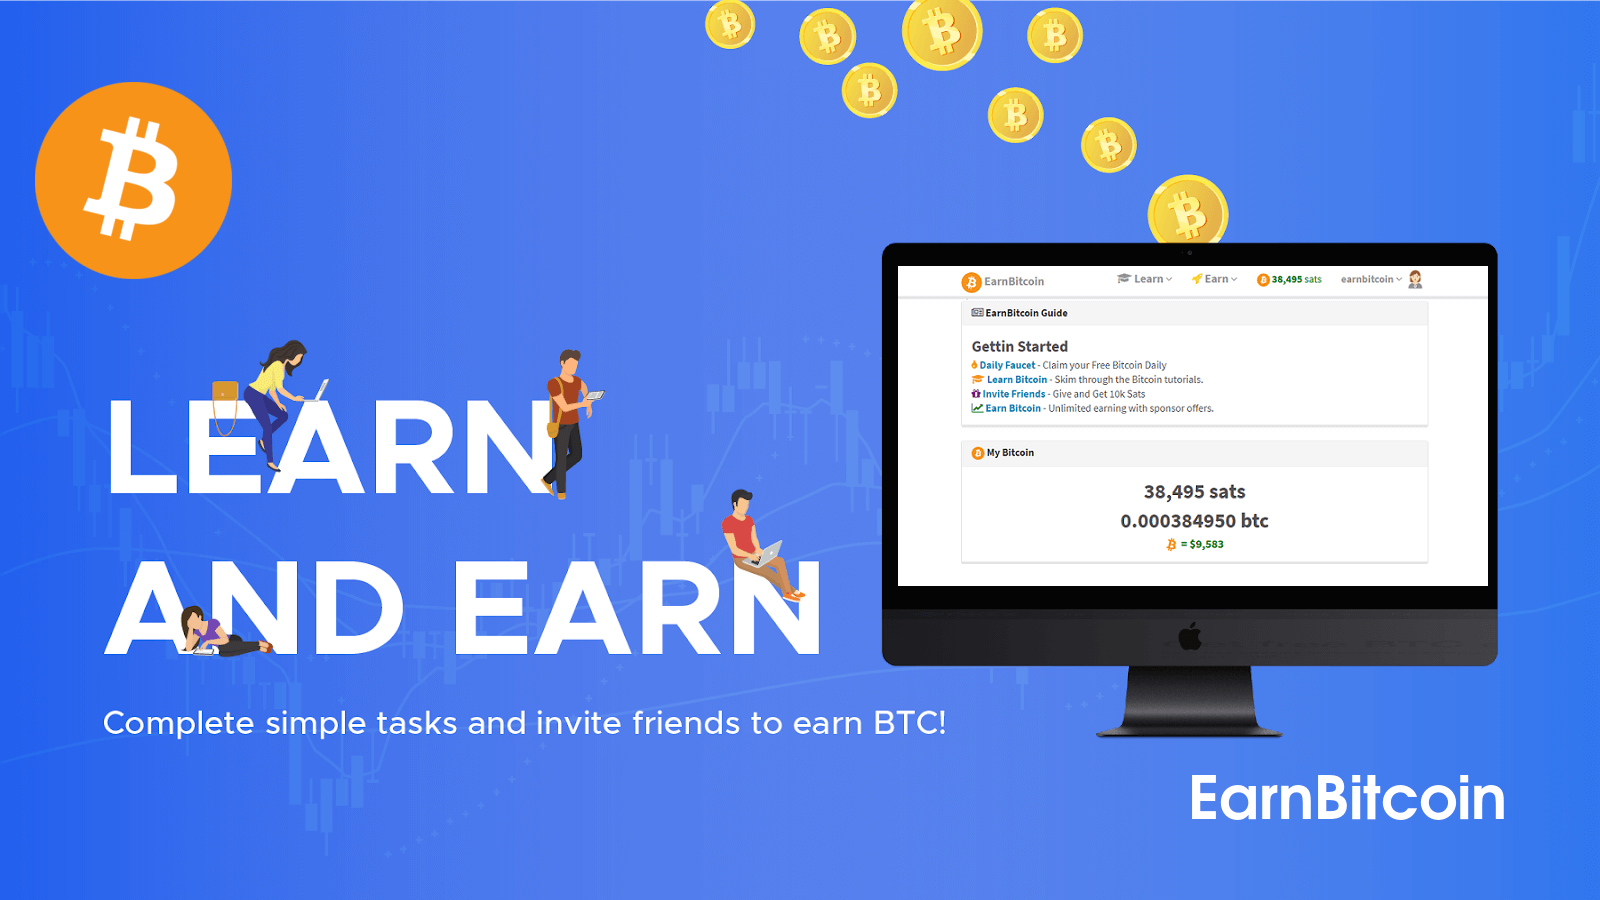 www.earnbitcoin.me